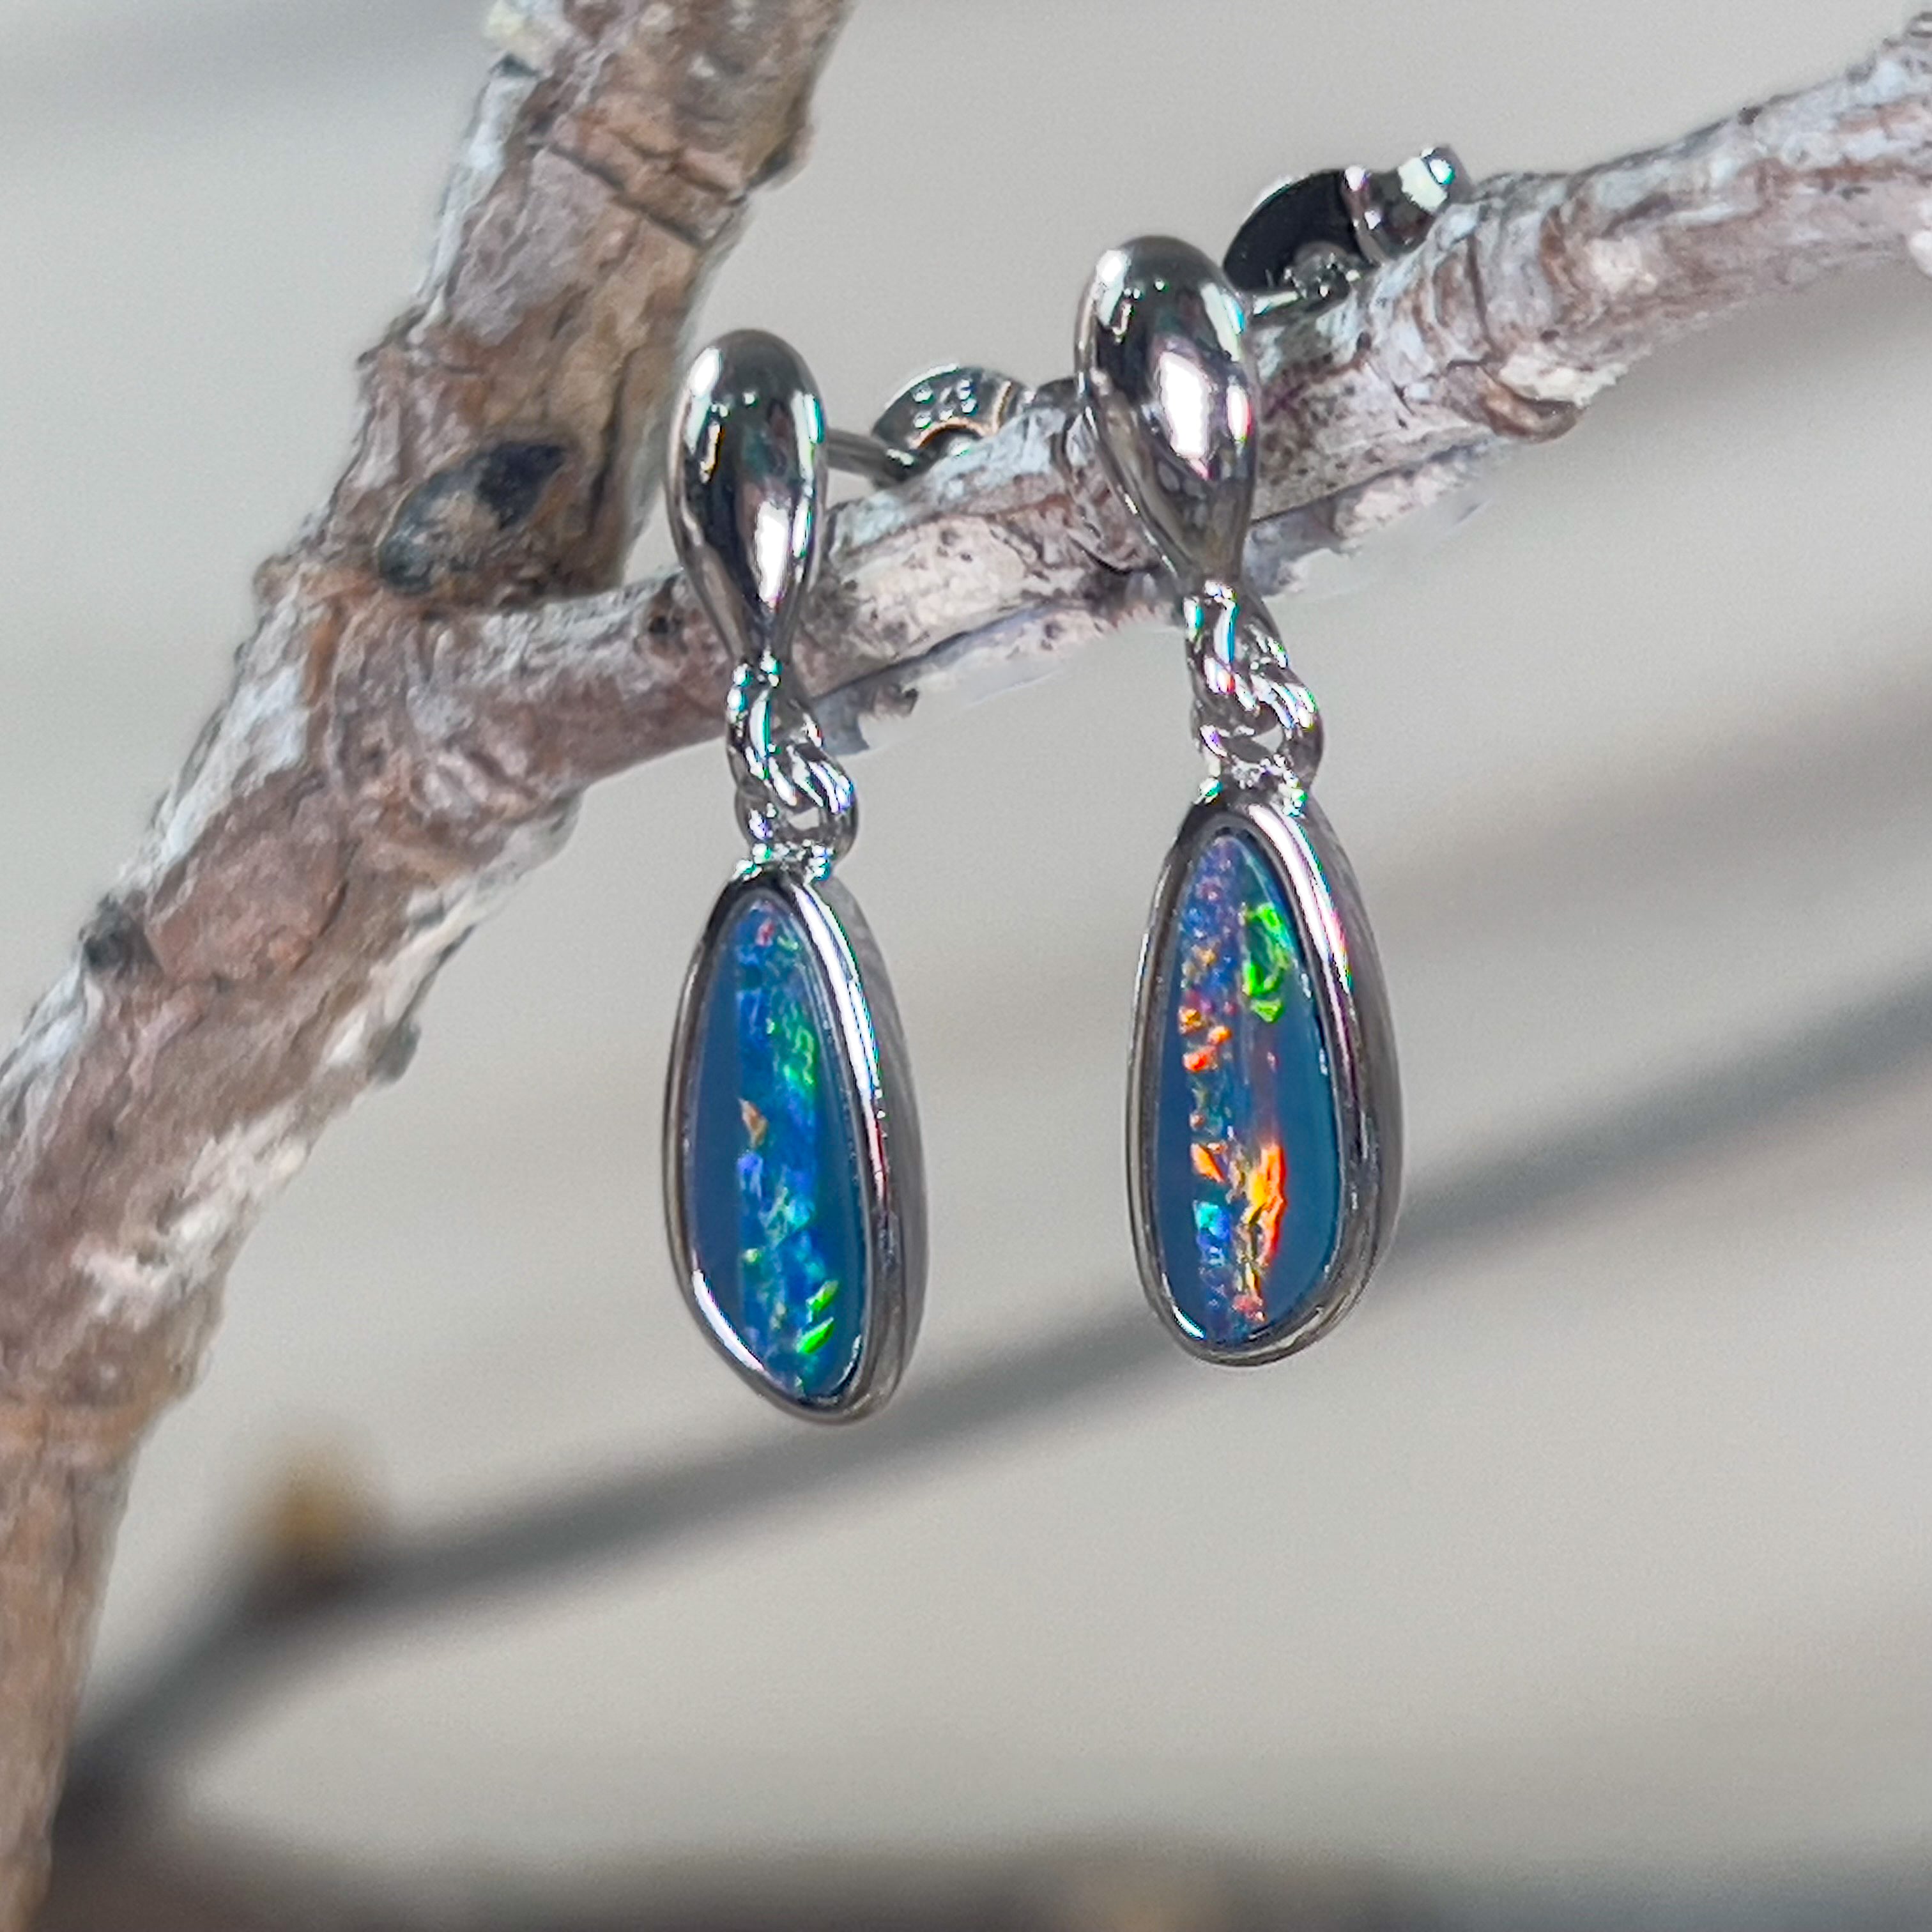 Sterling Silver Opal doublet dangling earrings - Masterpiece Jewellery Opal & Gems Sydney Australia | Online Shop